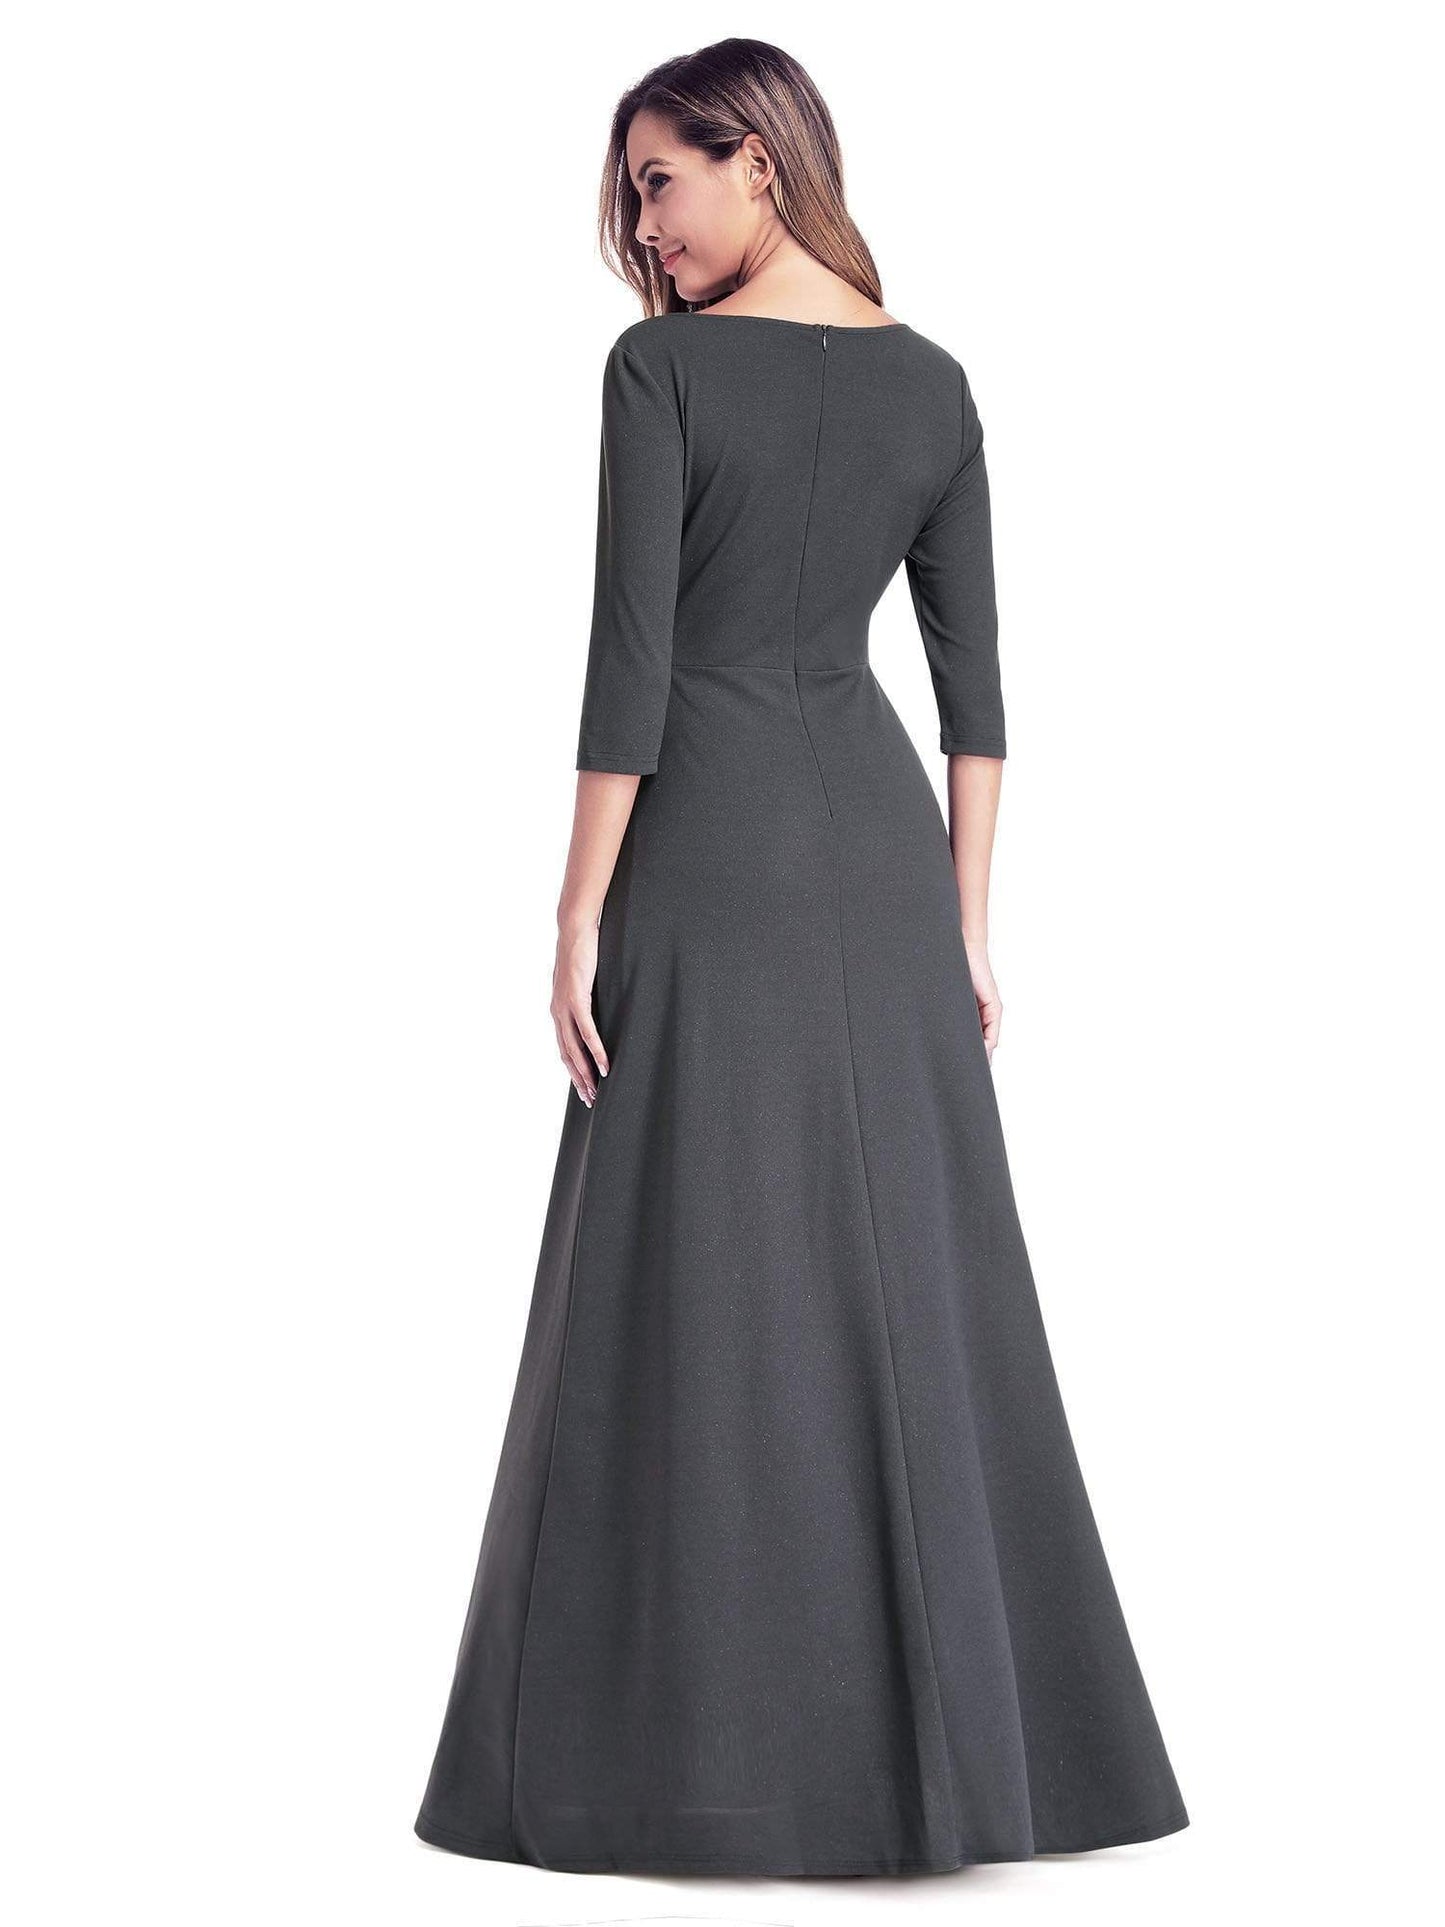 Women's V-Neck Wrap Long Dress Size 6 Style 35009